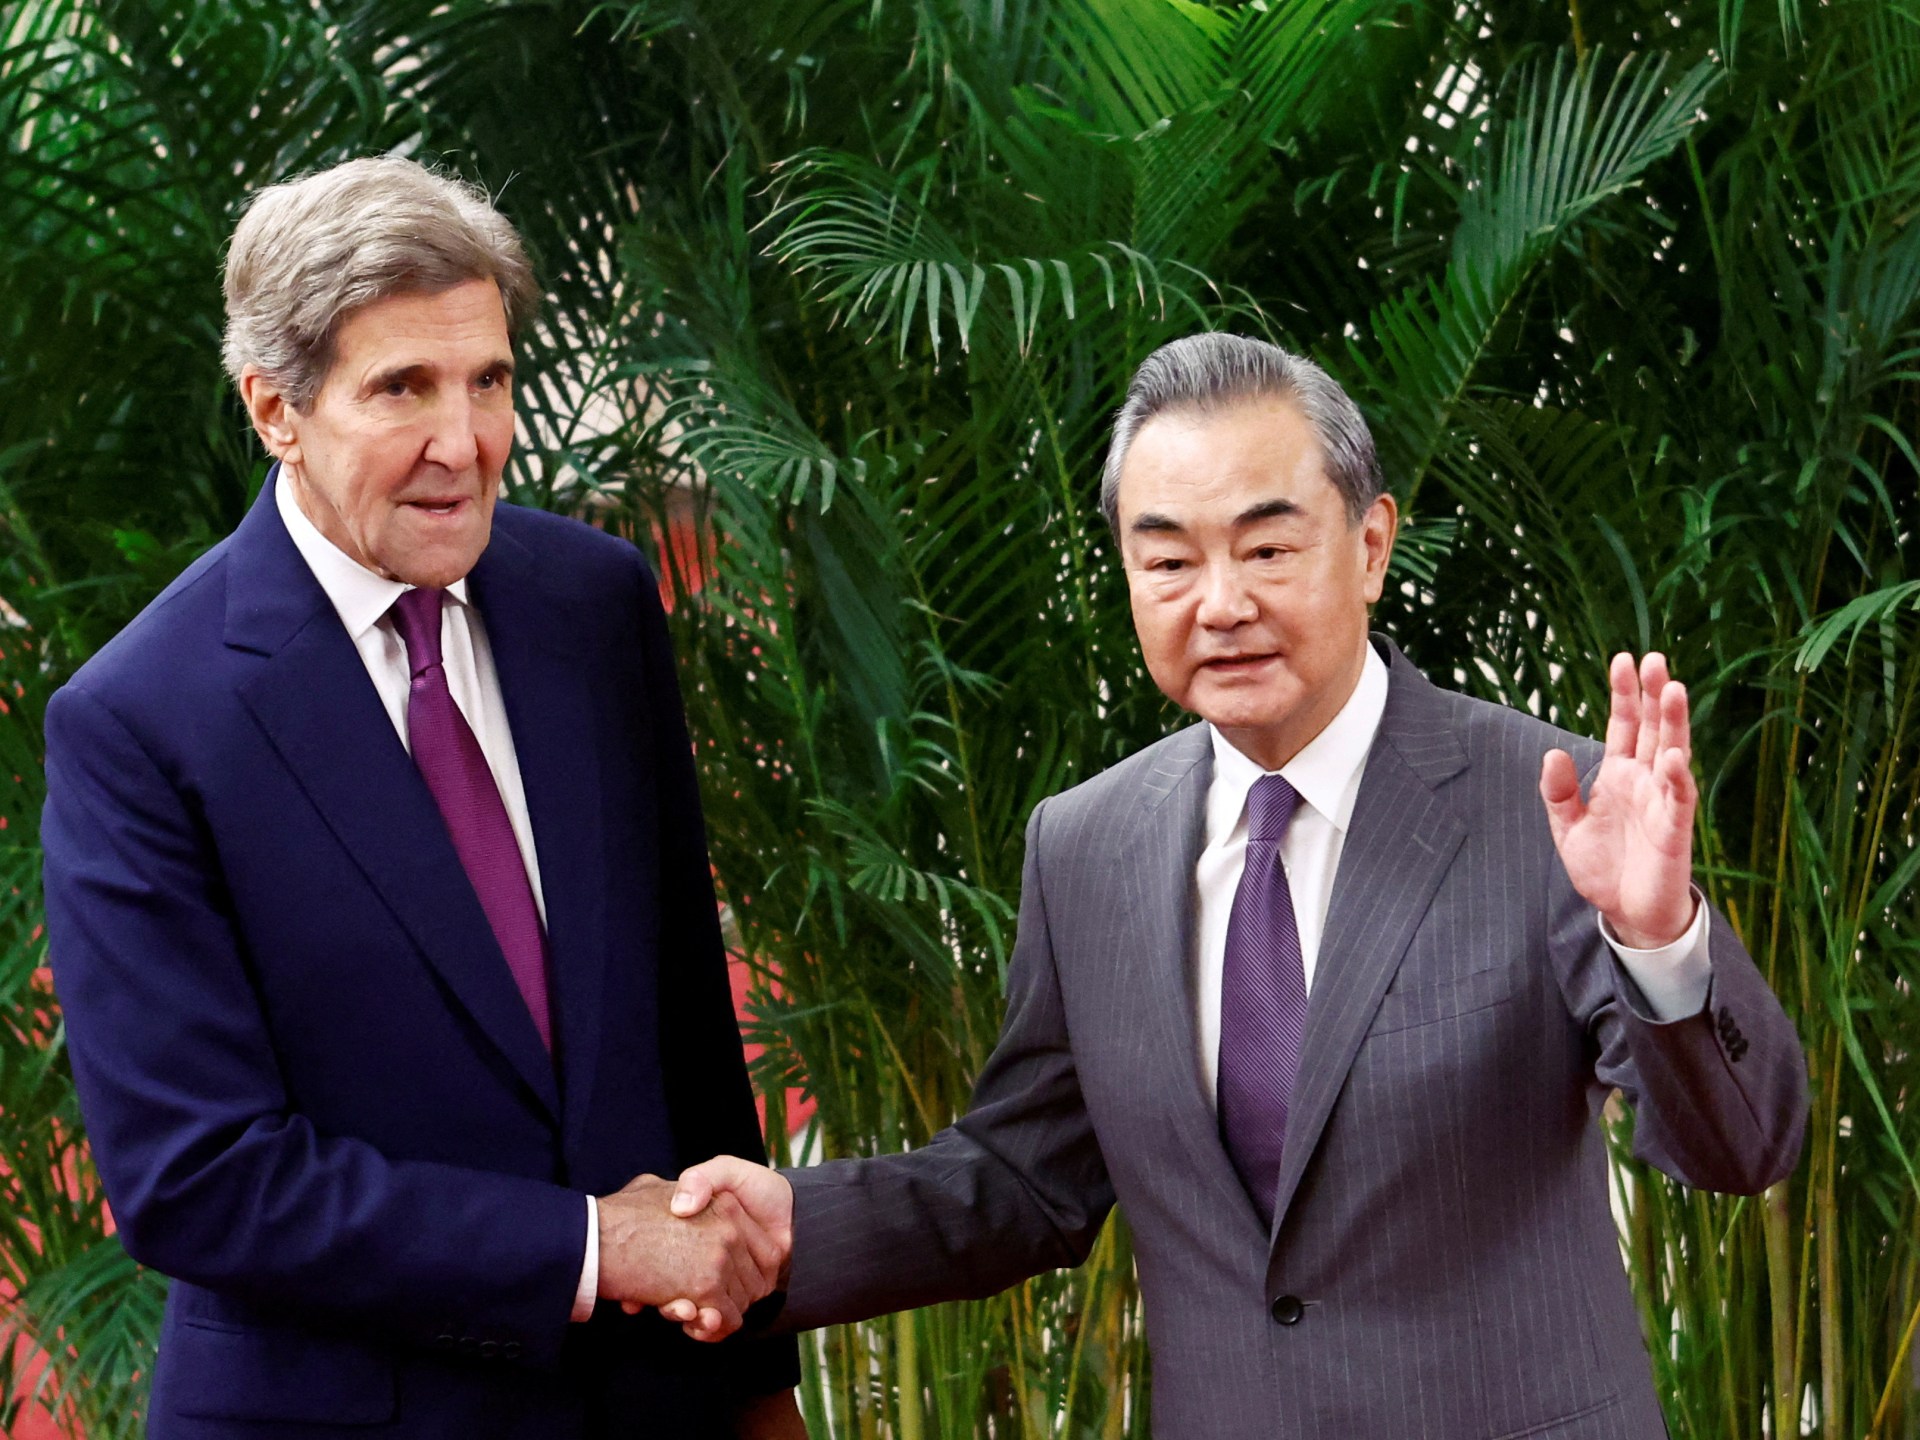 Kerry berharap kerja sama iklim dapat mendefinisikan kembali hubungan AS-Tiongkok |  Berita Iklim